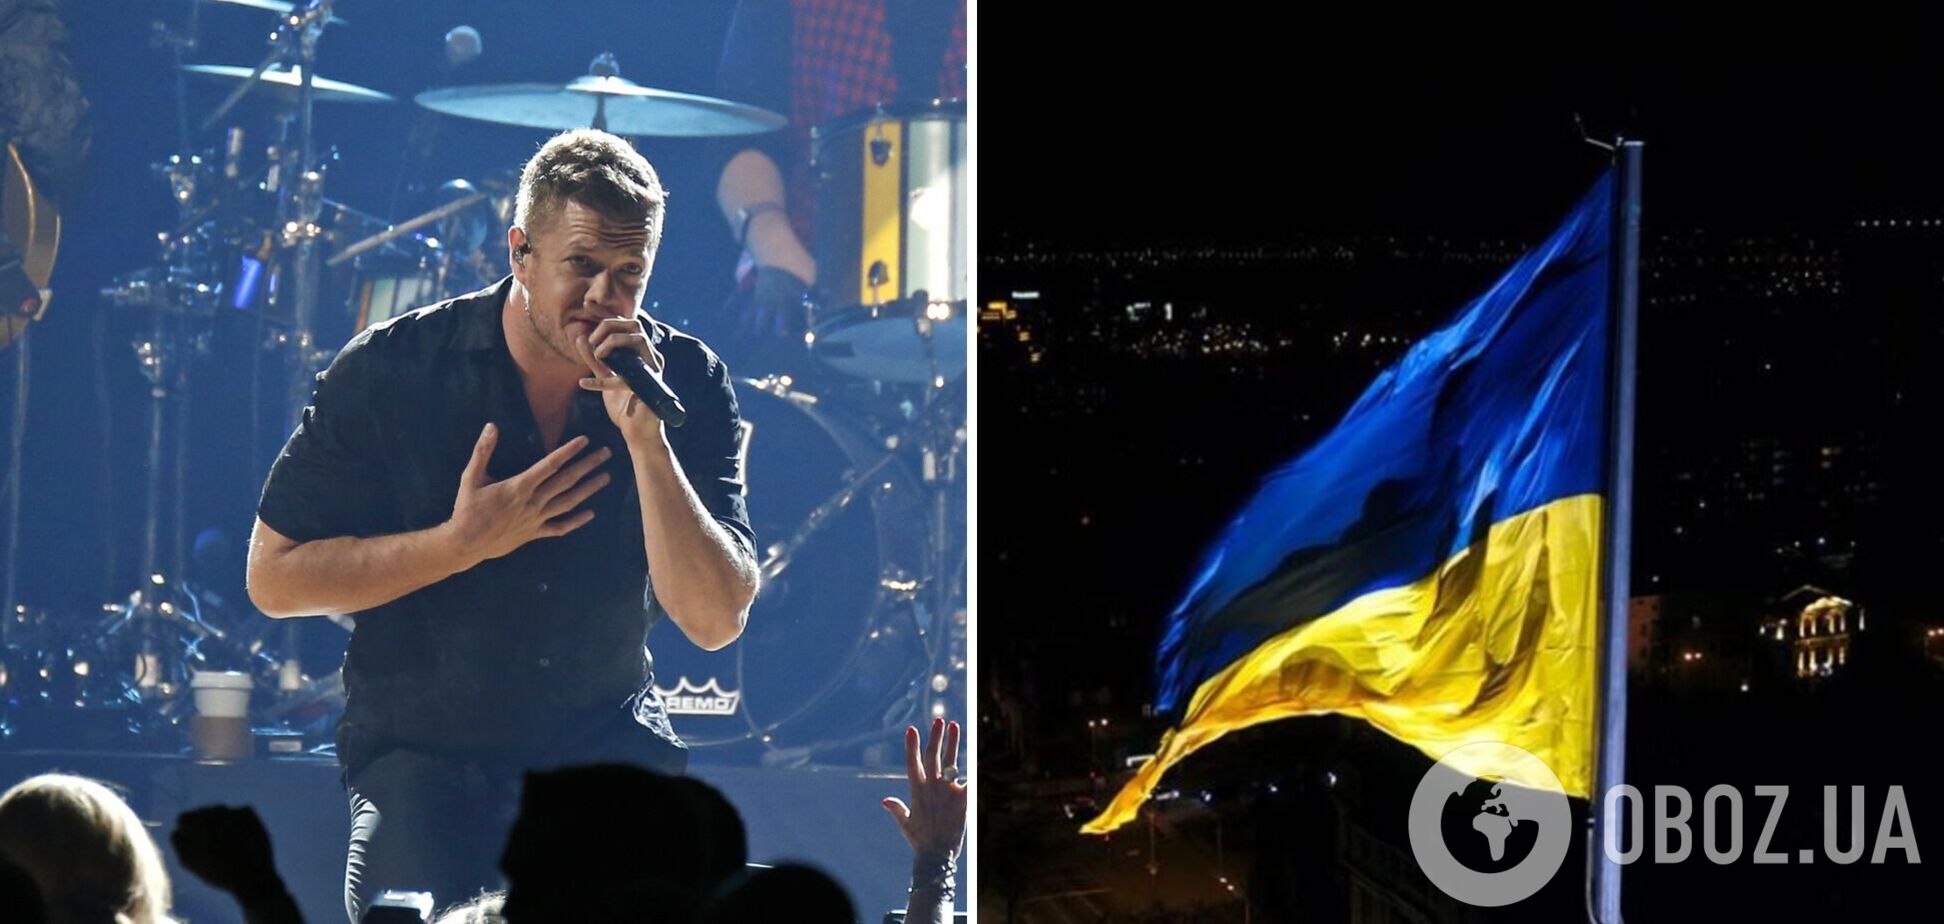 Солист Imagine Dragons Дэн Рейнольдс со сцены обратился к украинцам: я чувствую себя беспомощным, почему умирают дети?